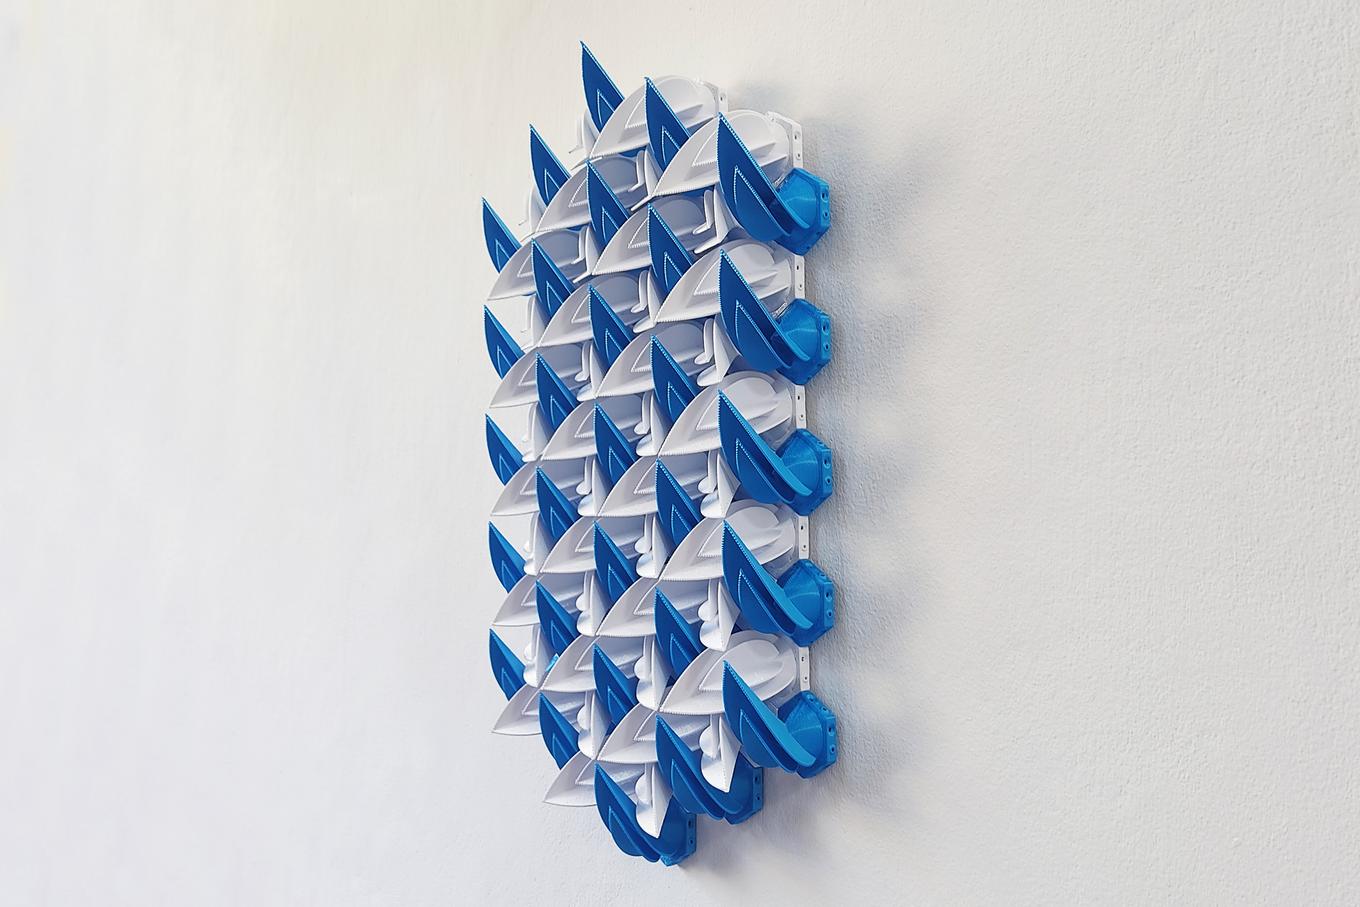 Snow Shards | Herschel Shapiro | Geometric 3D Wall Art